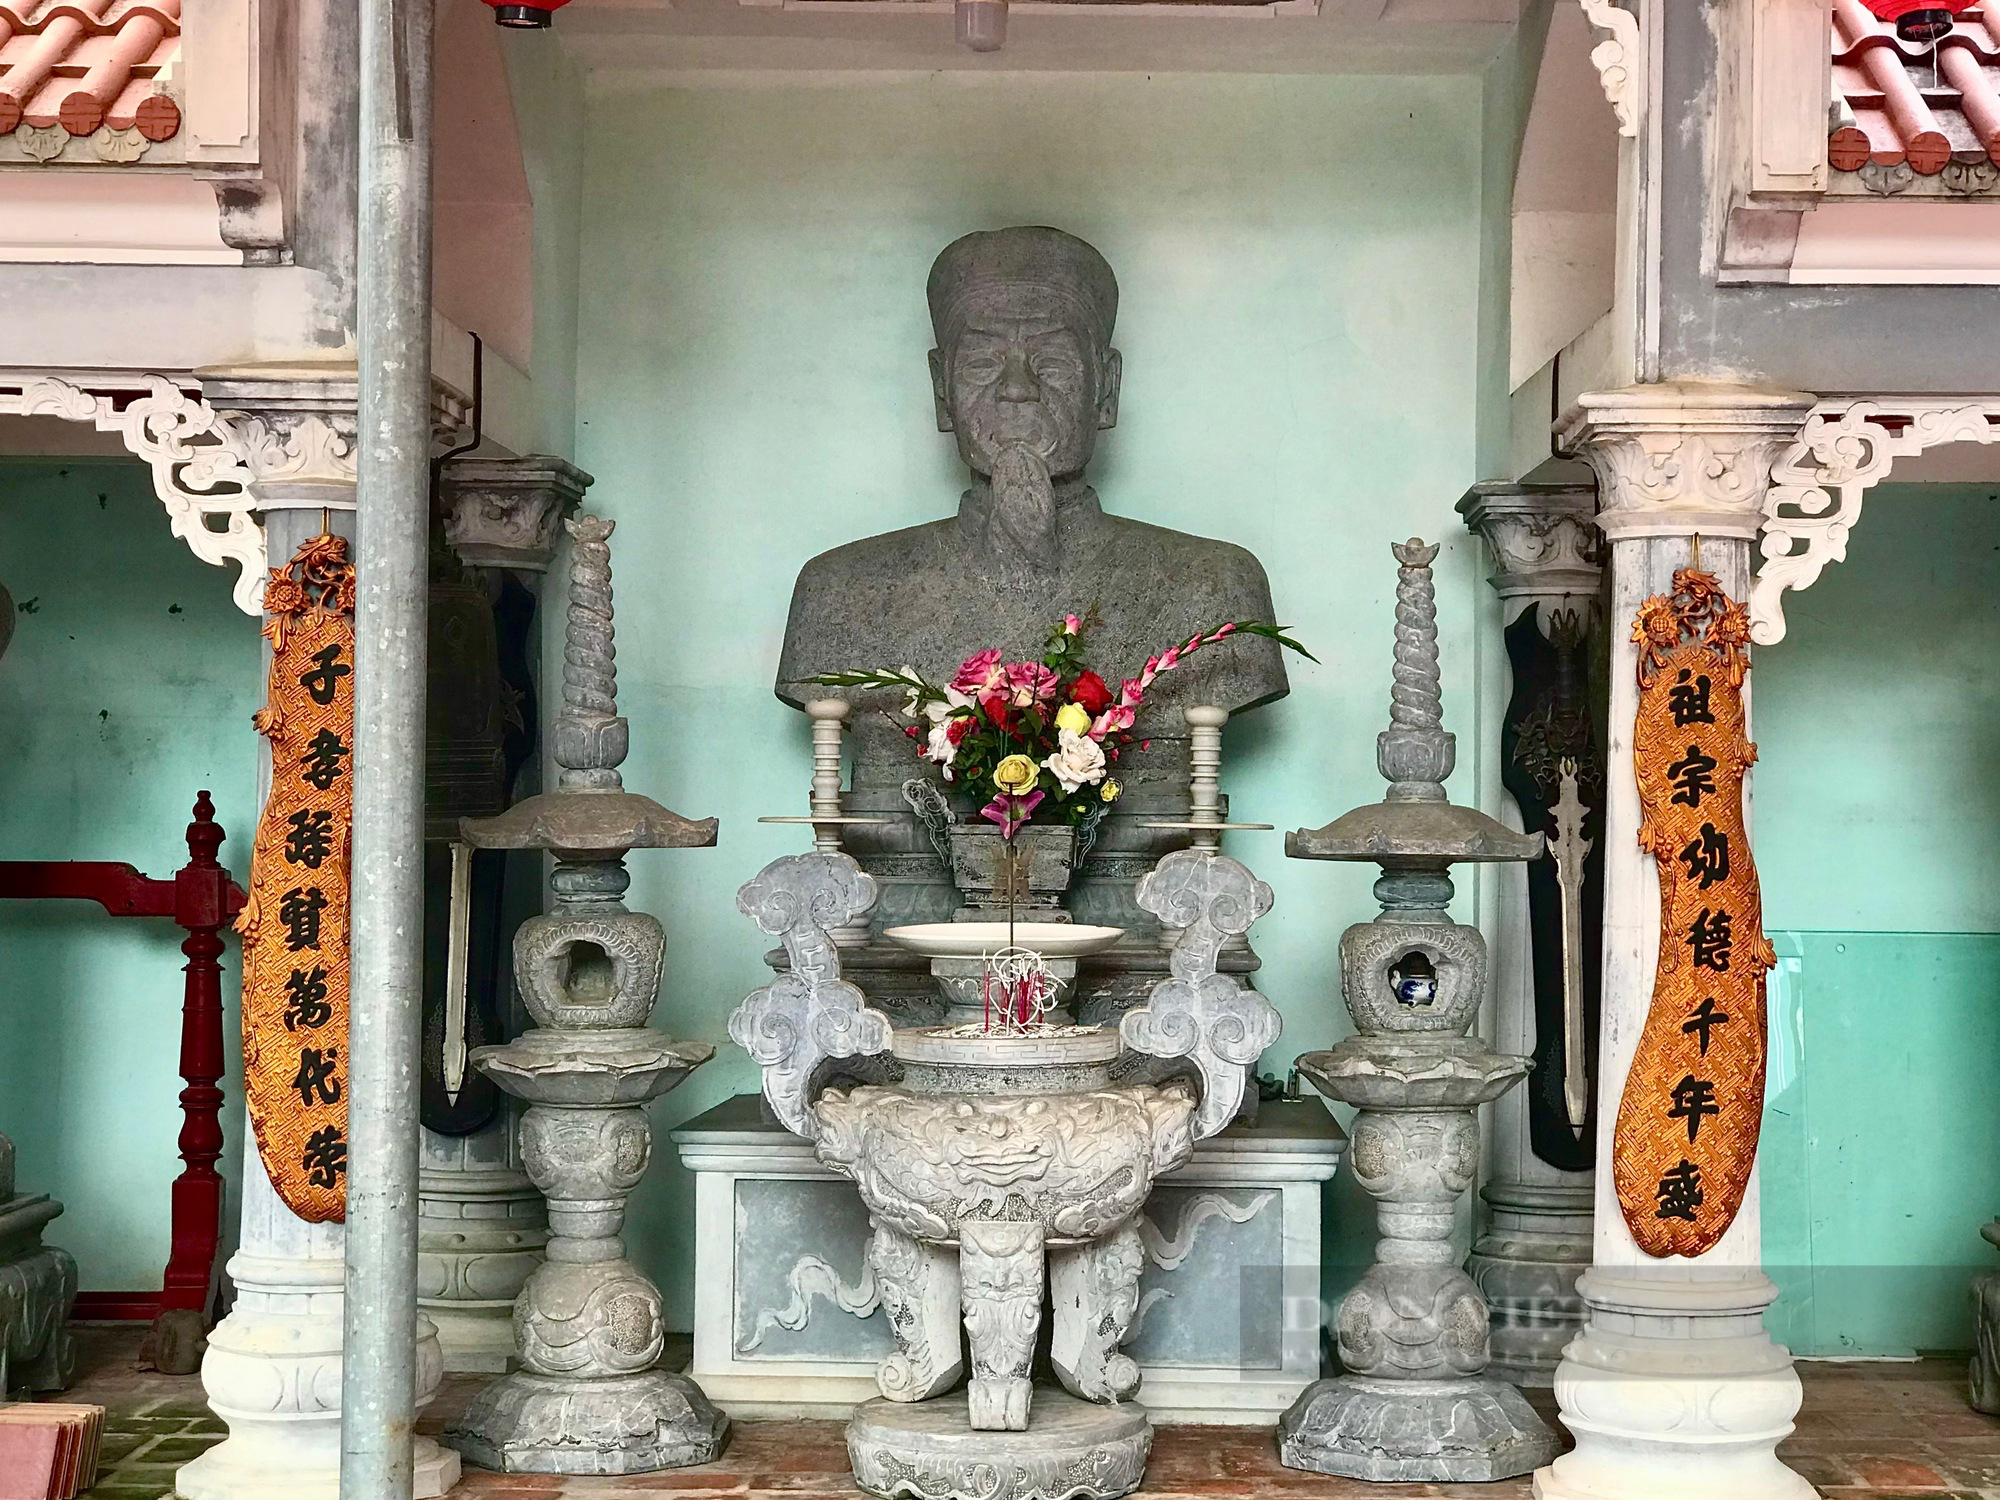 Chiêm ngưỡng nhà thờ cổ 400 tuổi của dòng họ Phan ở Hà Nội - Ảnh 2.